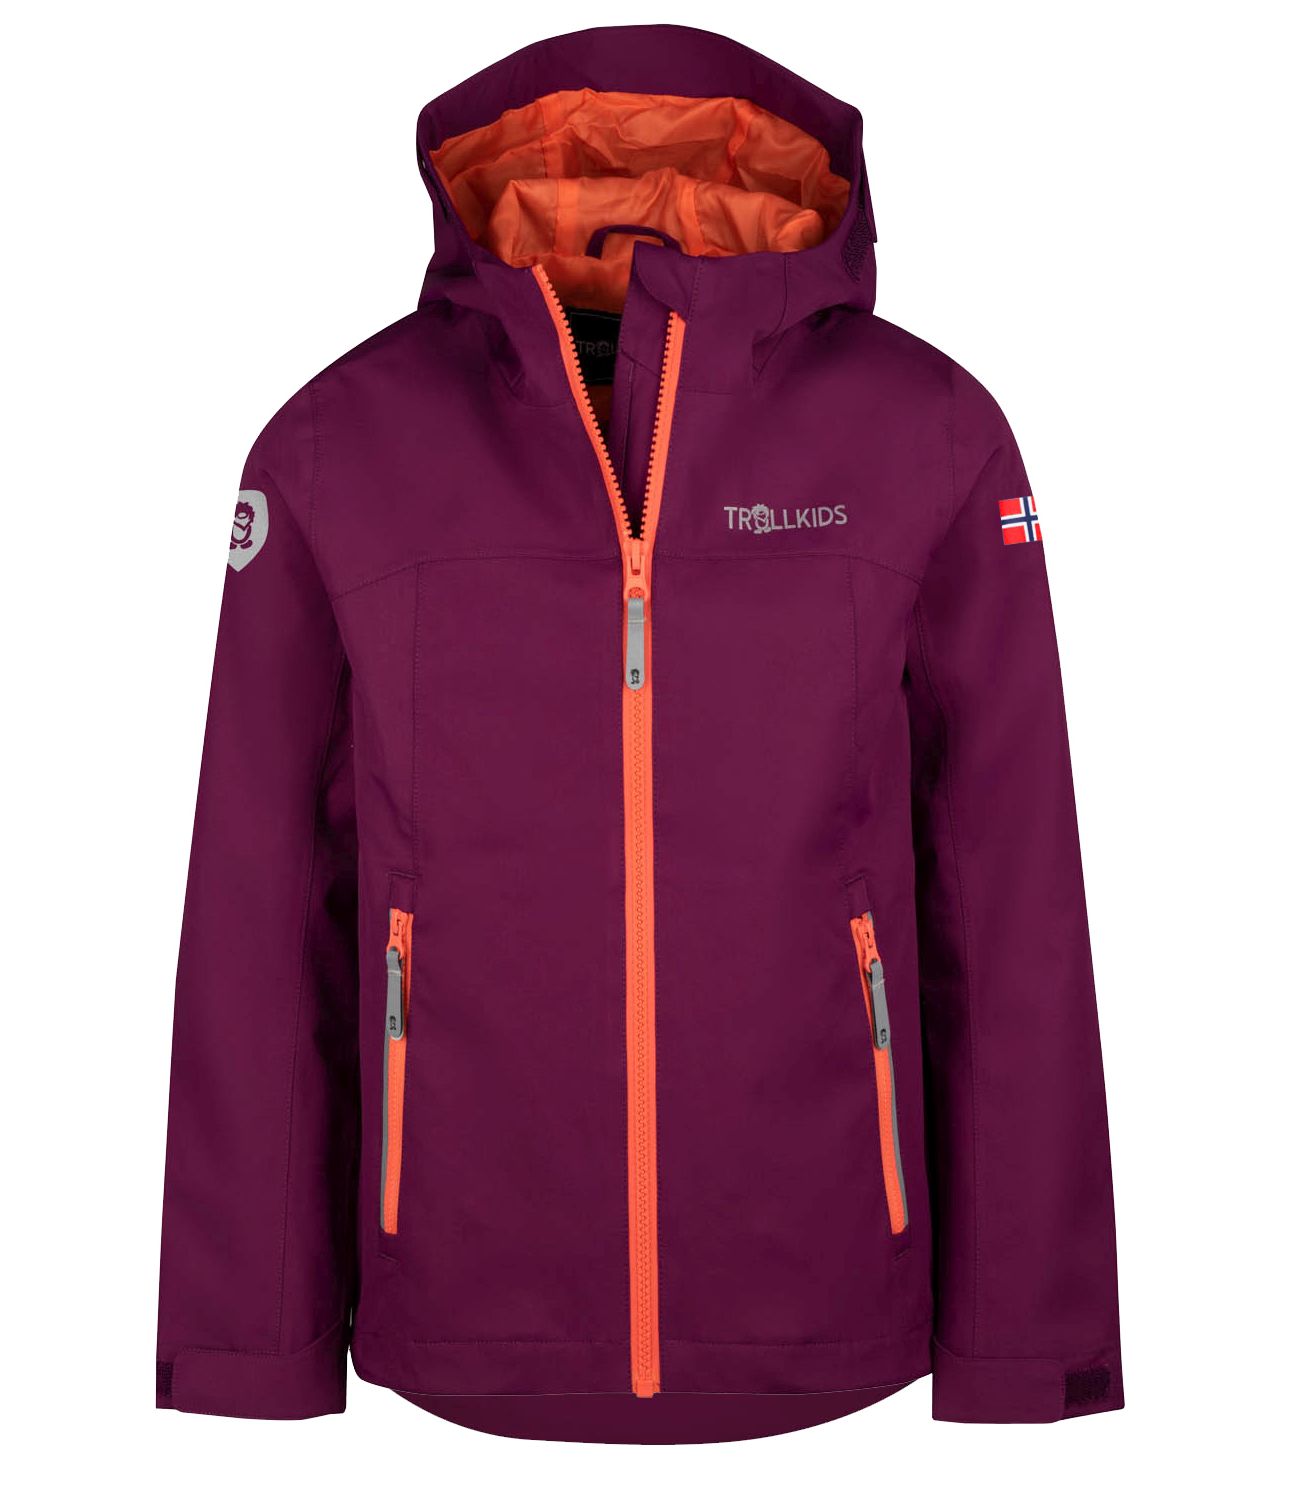 Функциональная куртка Trollkids Fahrradjacke Telemark, цвет Maulbeere/Pfirsich